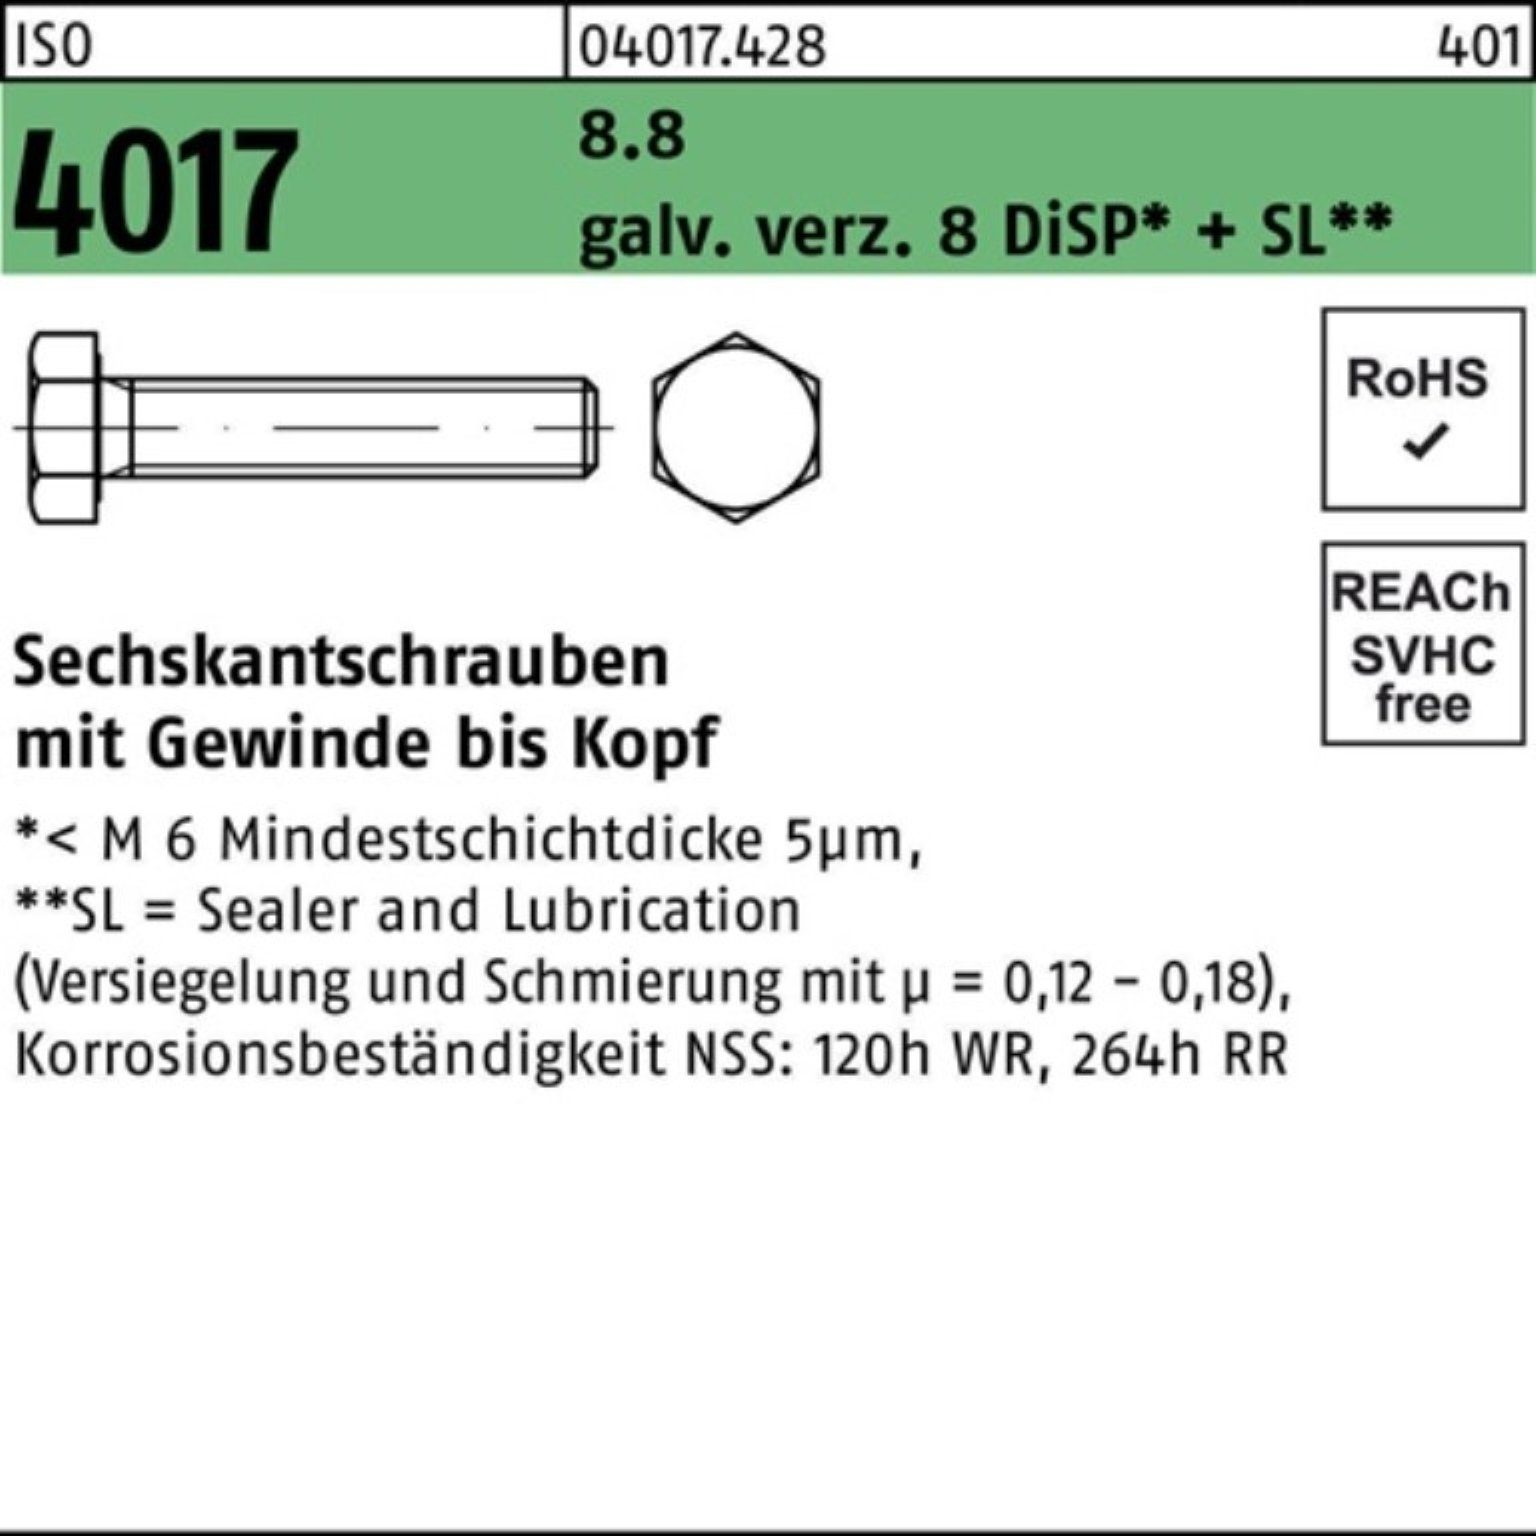 M24x 60 100er Sechskantschraube Pack ISO Bufab 8.8 4017 VG Sechskantschraube galv.verz. DiSP 8